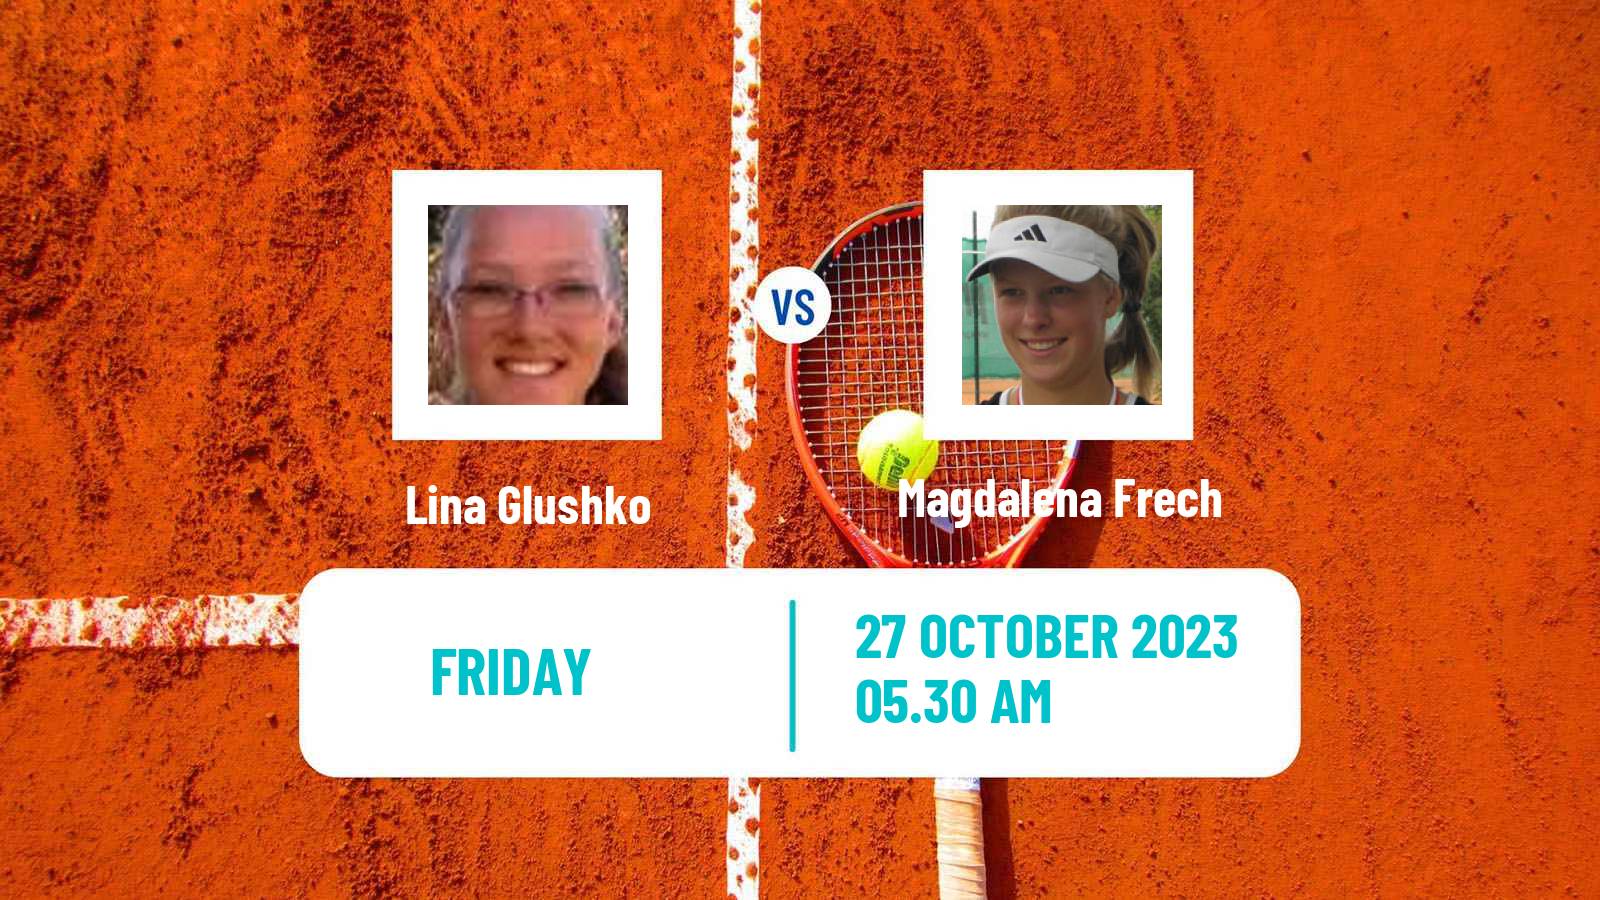 Tennis ITF W100 Les Franqueses Del Valles Women Lina Glushko - Magdalena Frech